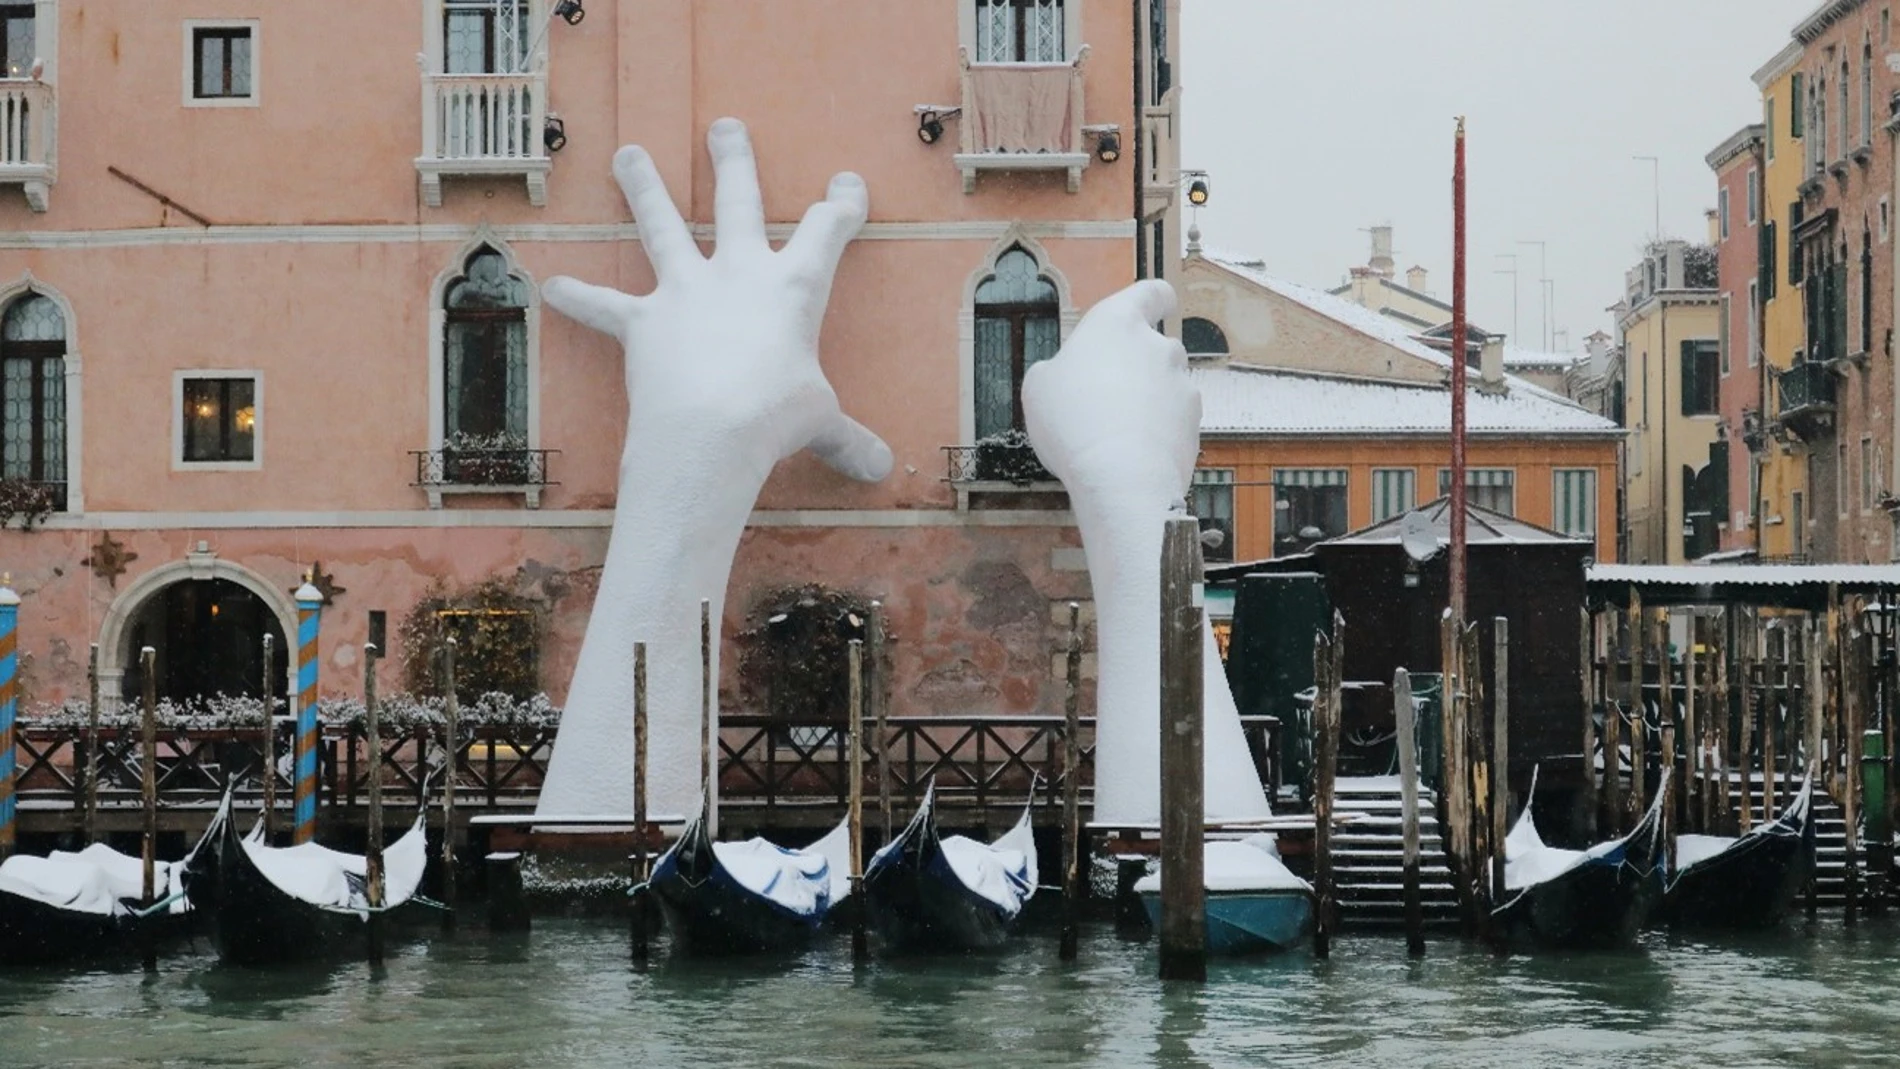 Escultura denominada “Soporte” creada por Lorenzo Quinn en el famoso Gran Canal de Venecia, para concienciar acerca del cambio climático. Fotografía de Hung Vuong Pham.